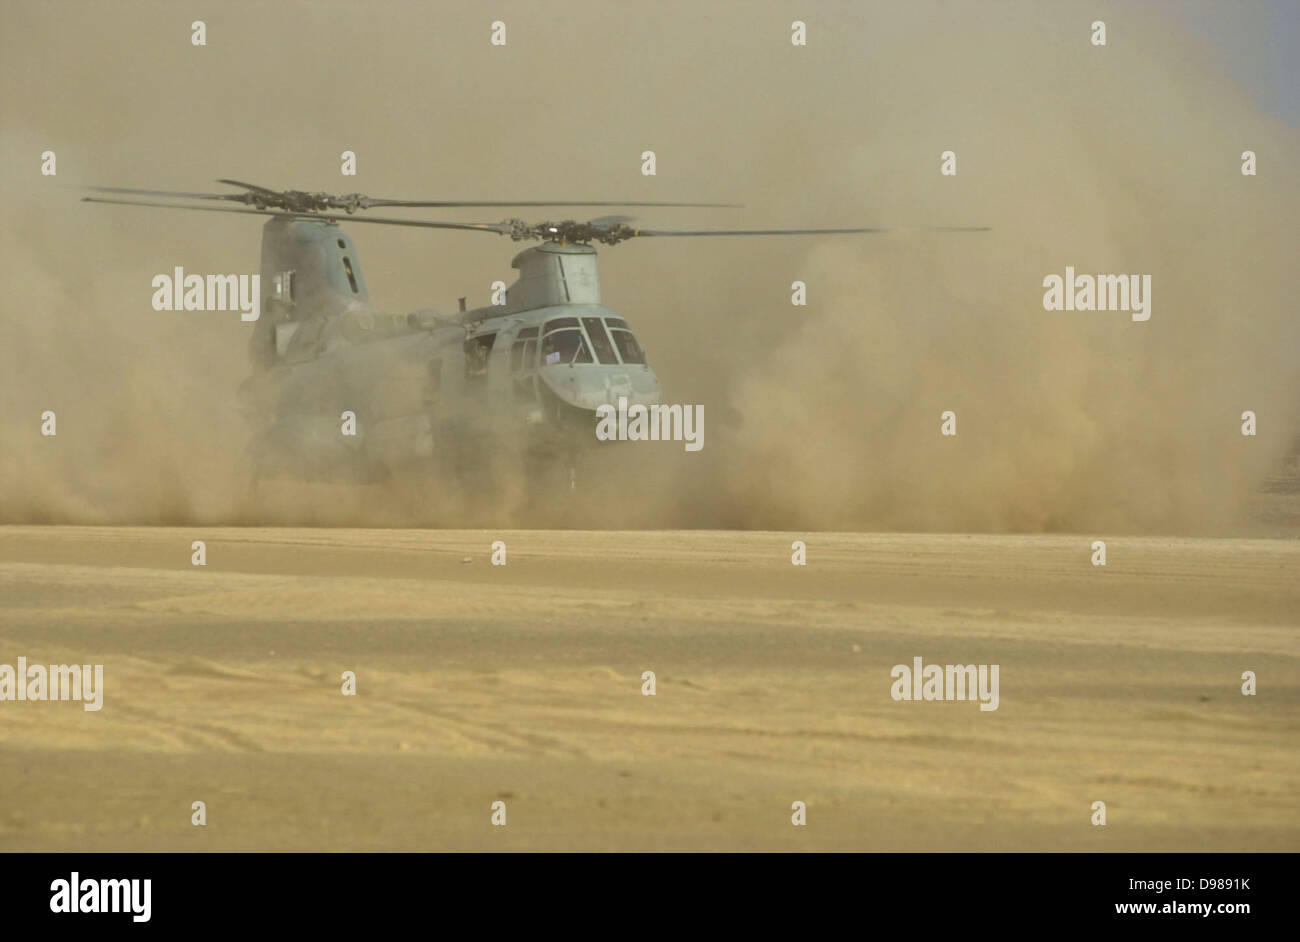 El campamento de Rhino, Afganistán (Dec. 2, 2001) -- una infantería de marina de Estados Unidos. El CH-46 "Sea Knight" helicóptero aterriza en la pista de aterrizaje del desierto con nombre en código "Rhino". Rhino es un avance-base de operaciones estratégicamente situado en el interior de Afganistán. Foto de la Marina de EE.UU. Foto de stock